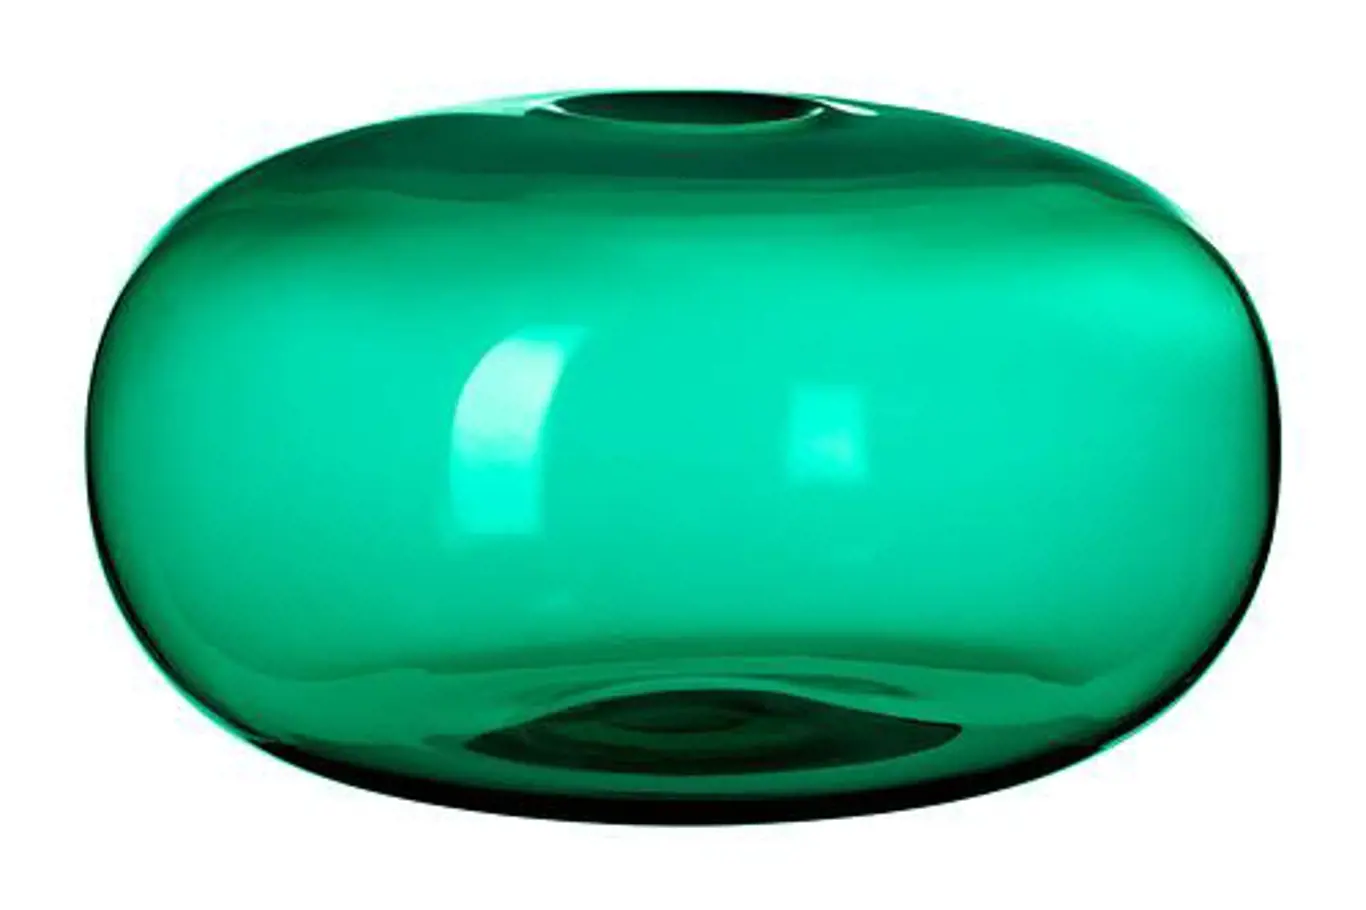 Barevné vázy v mnoha odstínech zelené rozvíjejí atraktivní olivový odstín kuchyňských dvířek. Je možné vybírat ze široké škály odstínů od hřejivé zelenožluté až po chladnou modrozelenou. Nízká váza Stockholm barevně i tvarově doplňuje svojí vyšší kamar...